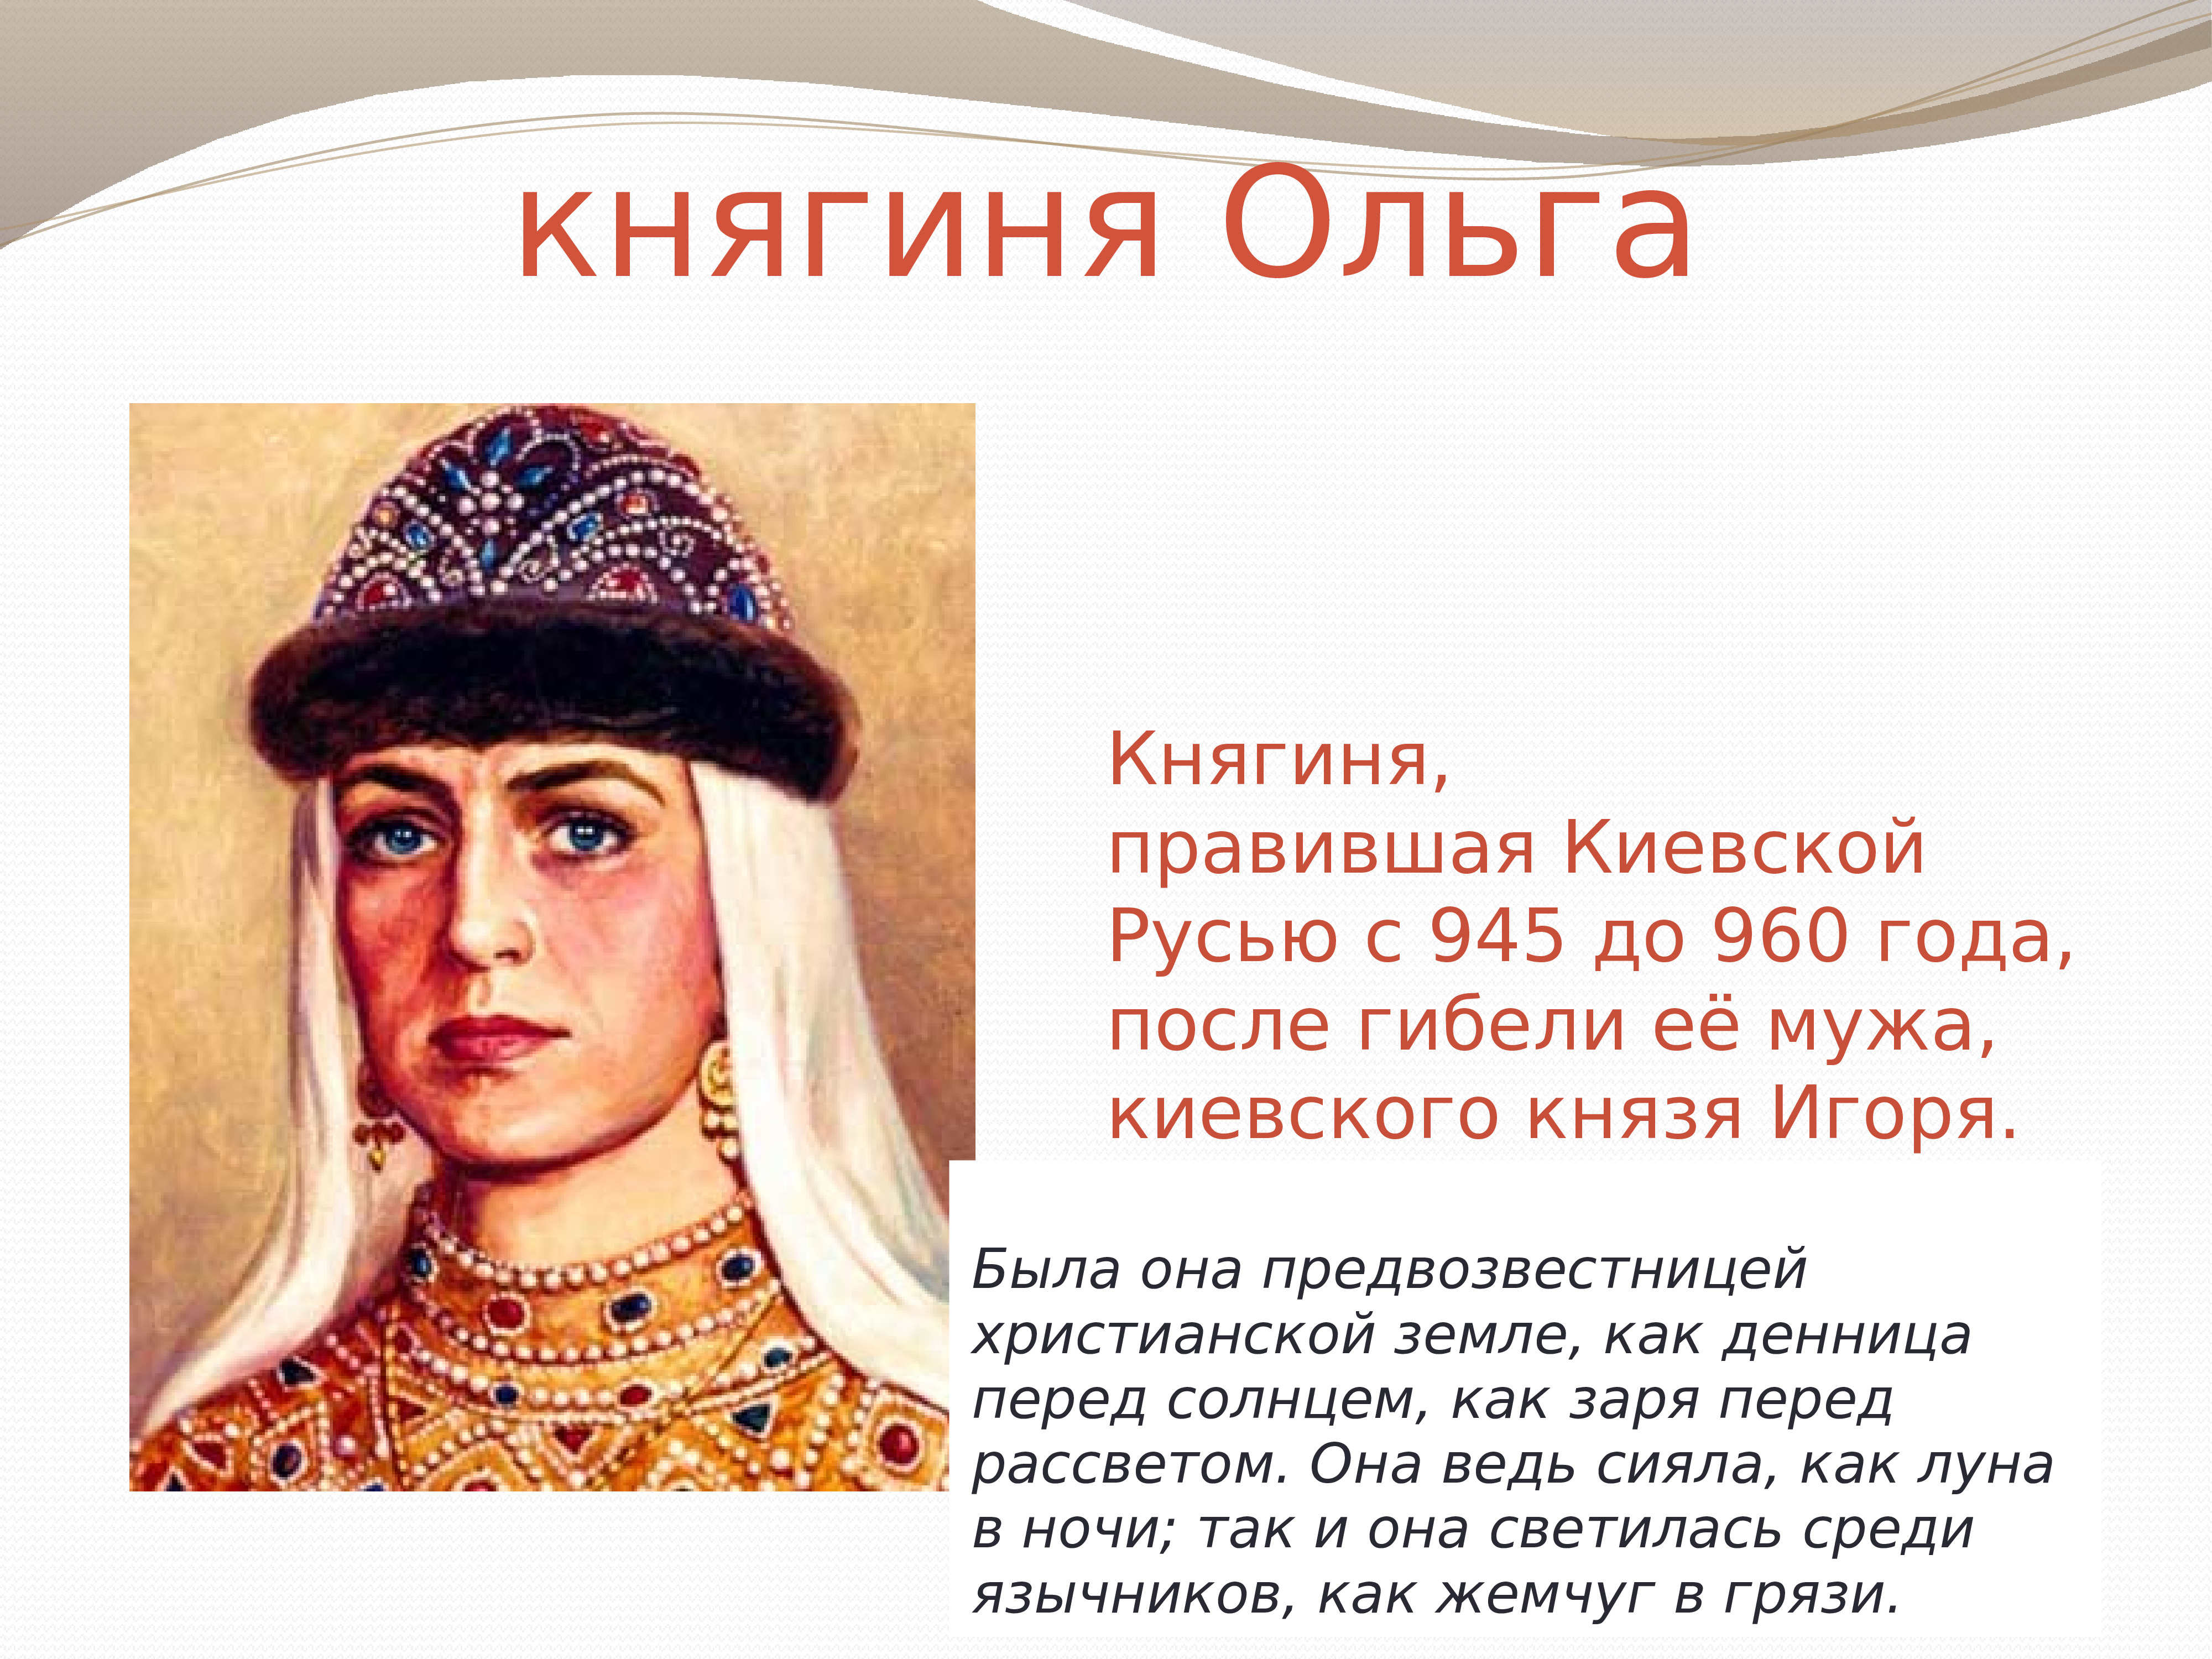 Ольга жена князя Игоря